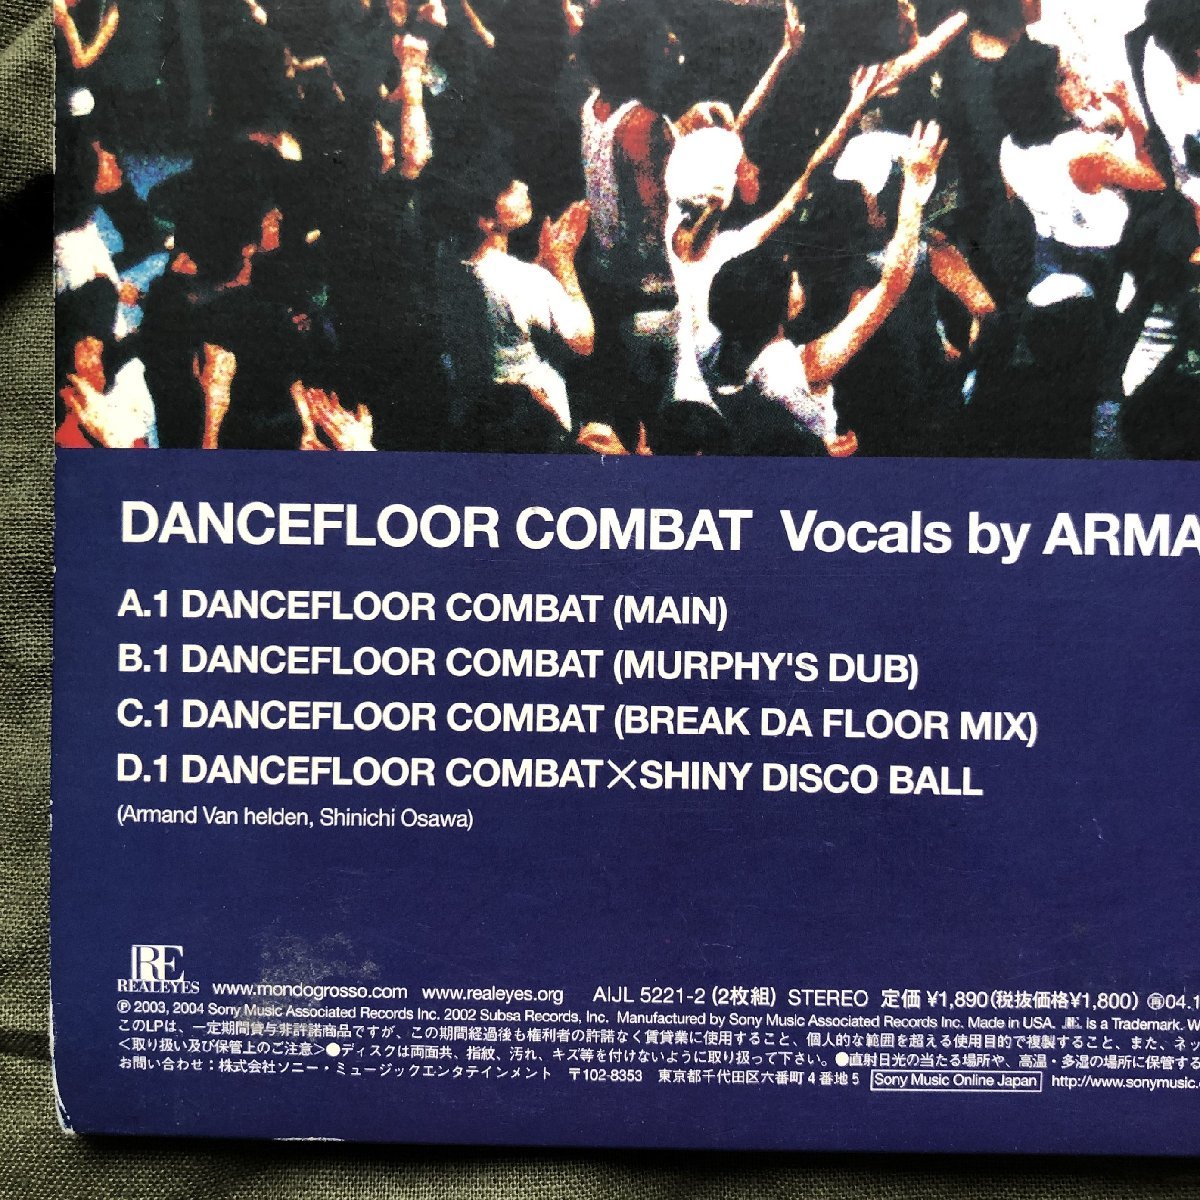 良ジャケ レア盤 2004年 モンド・グロッソ Mondo Grosso 2枚組LPレコード ダンスフロアー・コンバット Dancefloor Combat: J-Pop 大沢伸一_画像6